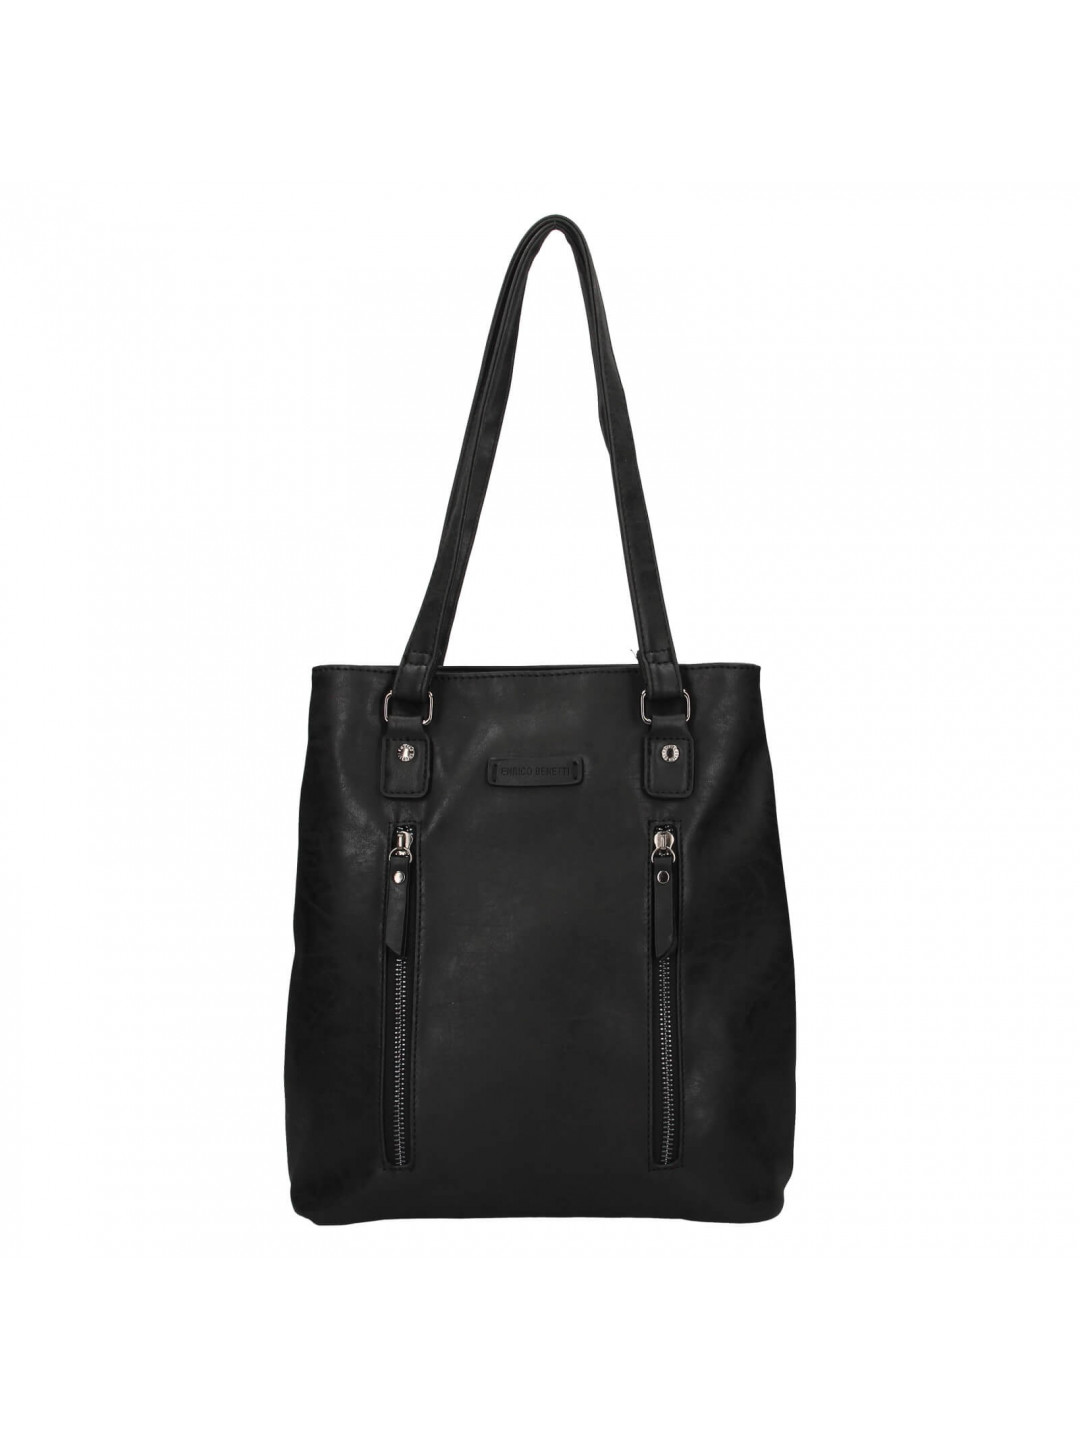 Elegantní dámská batůžko-kabelka Enrico Benetti Merta – černá